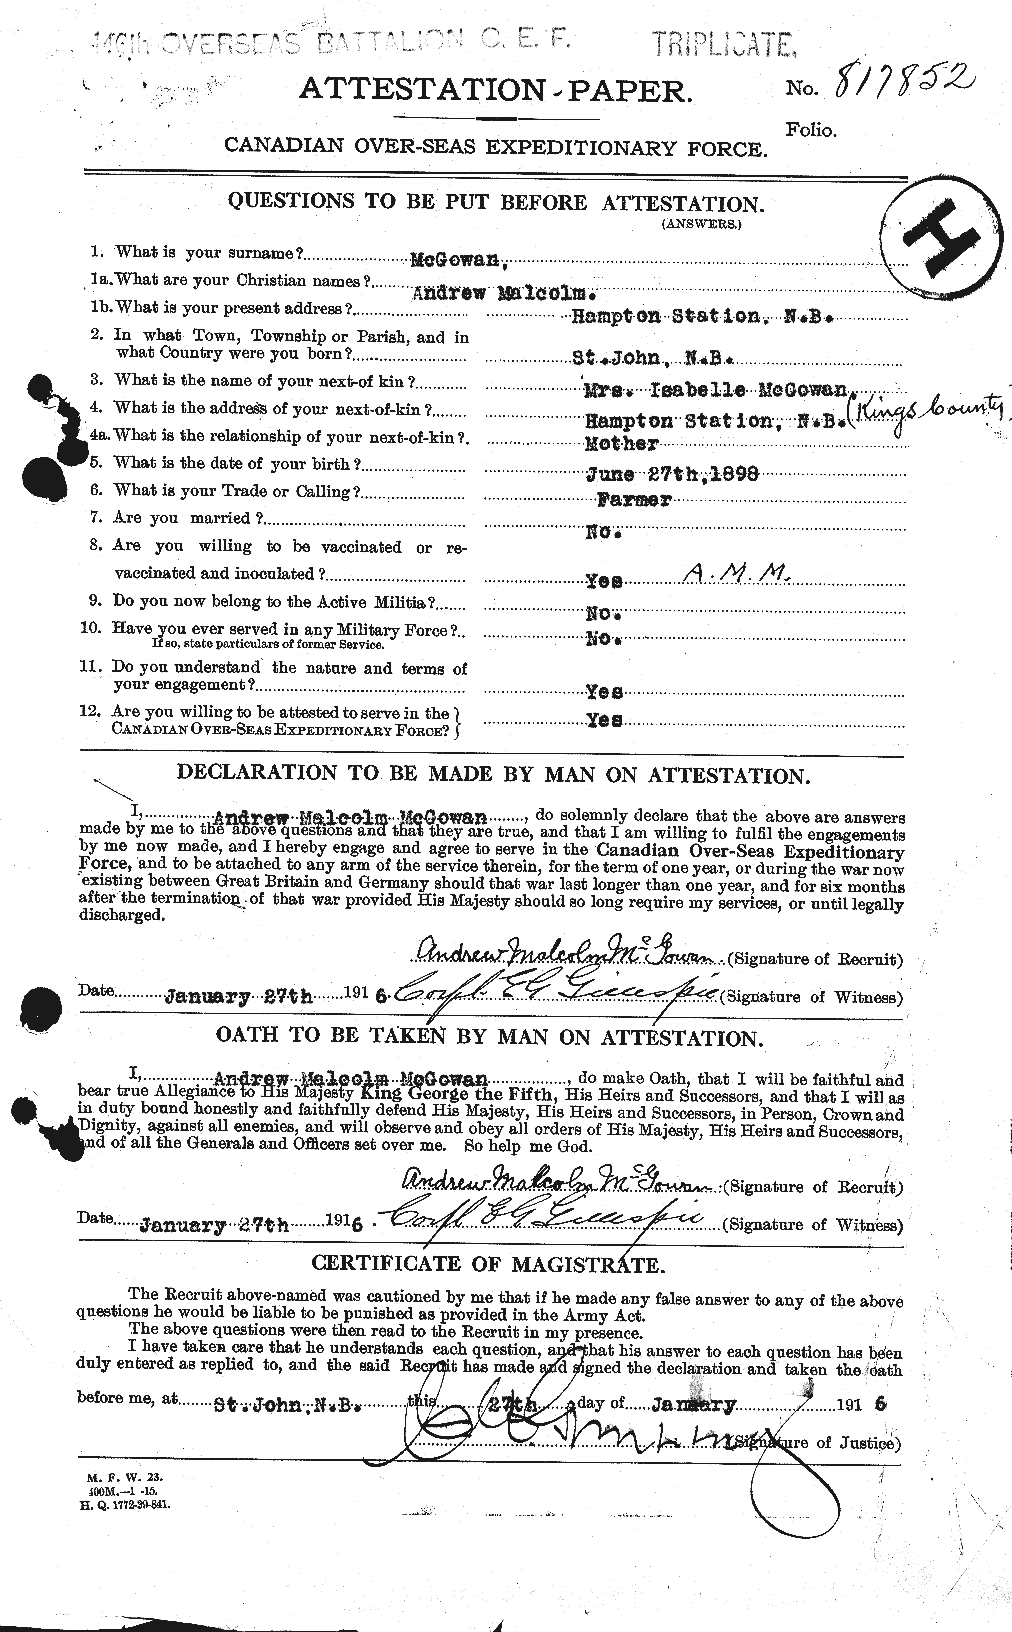 Dossiers du Personnel de la Première Guerre mondiale - CEC 522540a